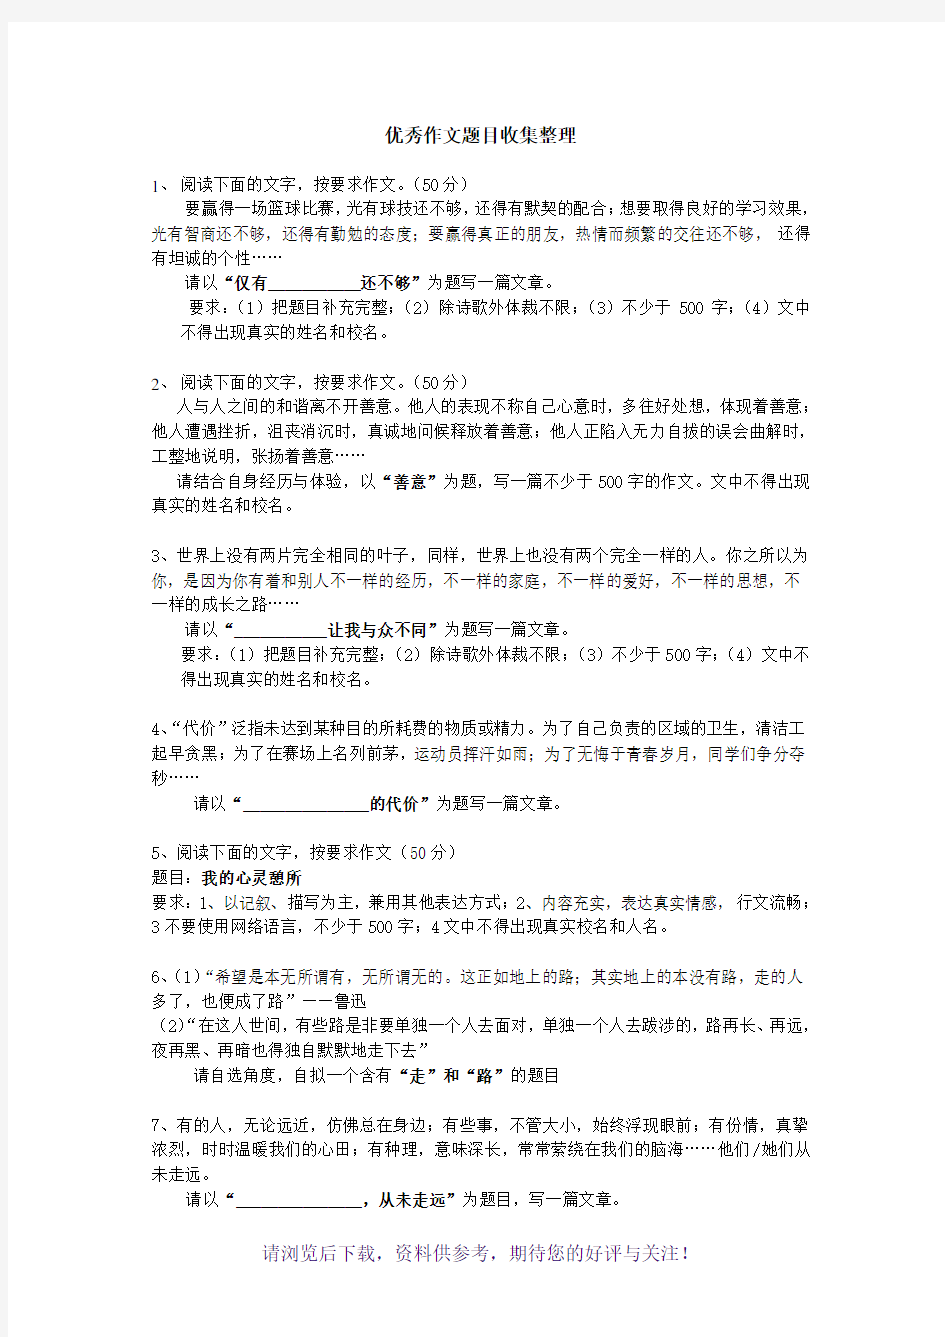 广东省初中语文经典作文试题10道